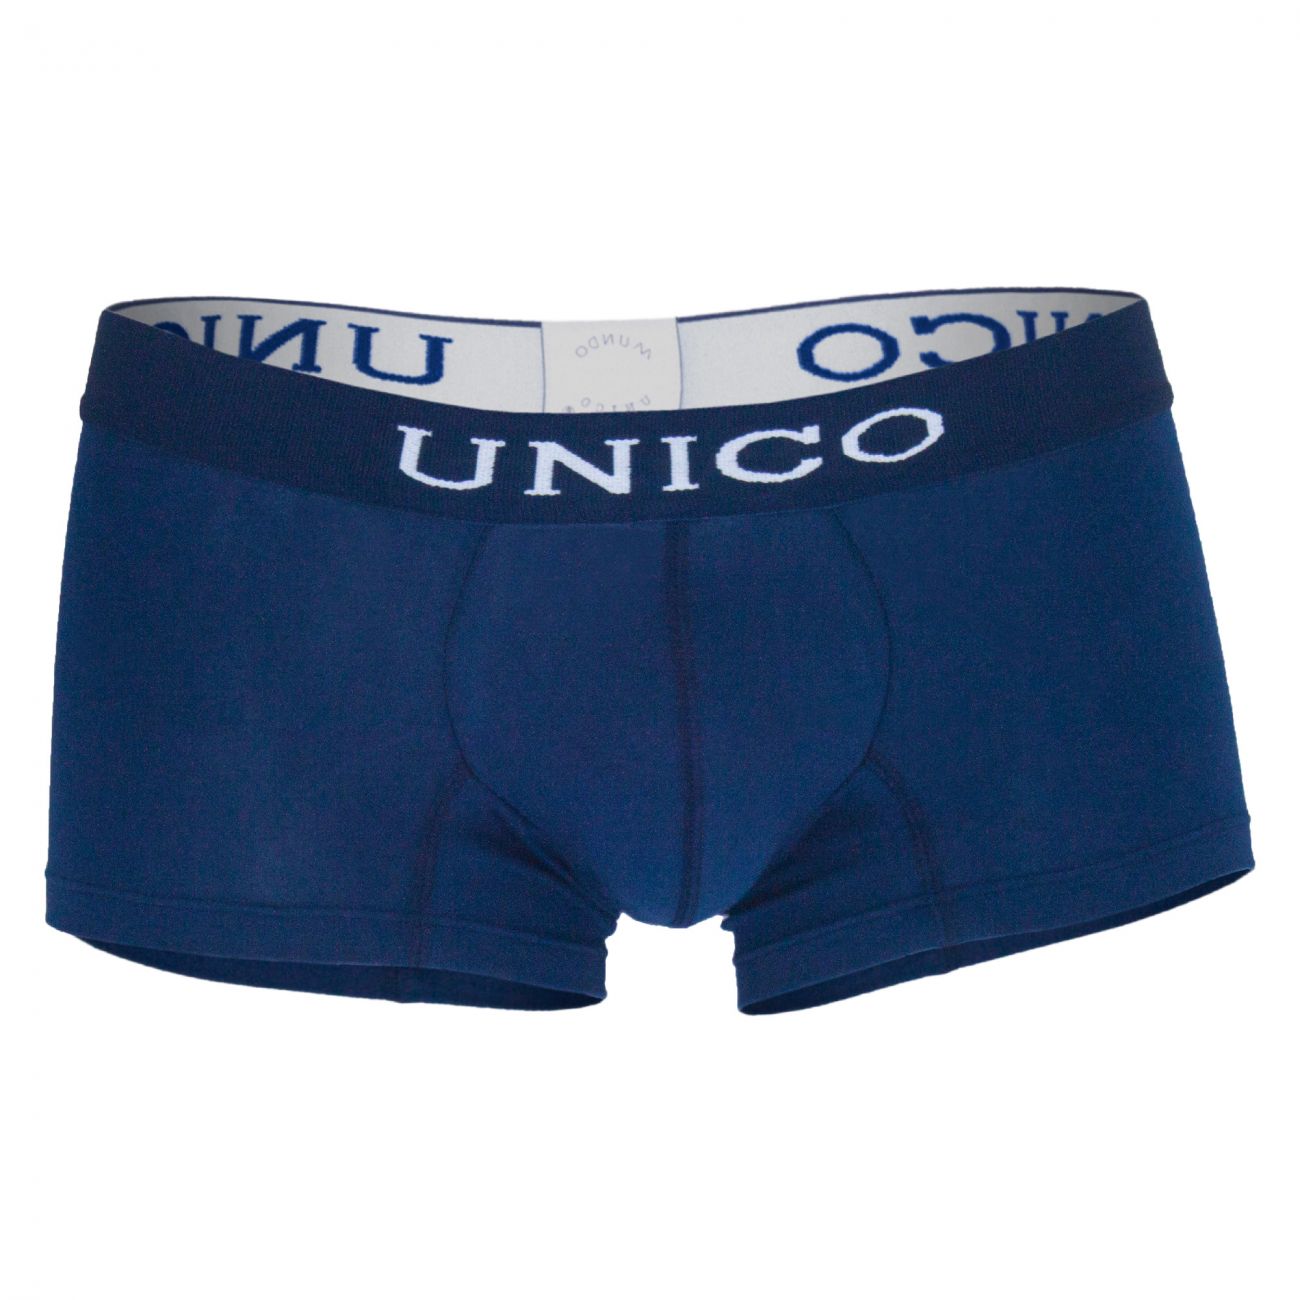 Unico 9610080182 Boxer Briefs Profundo Blue